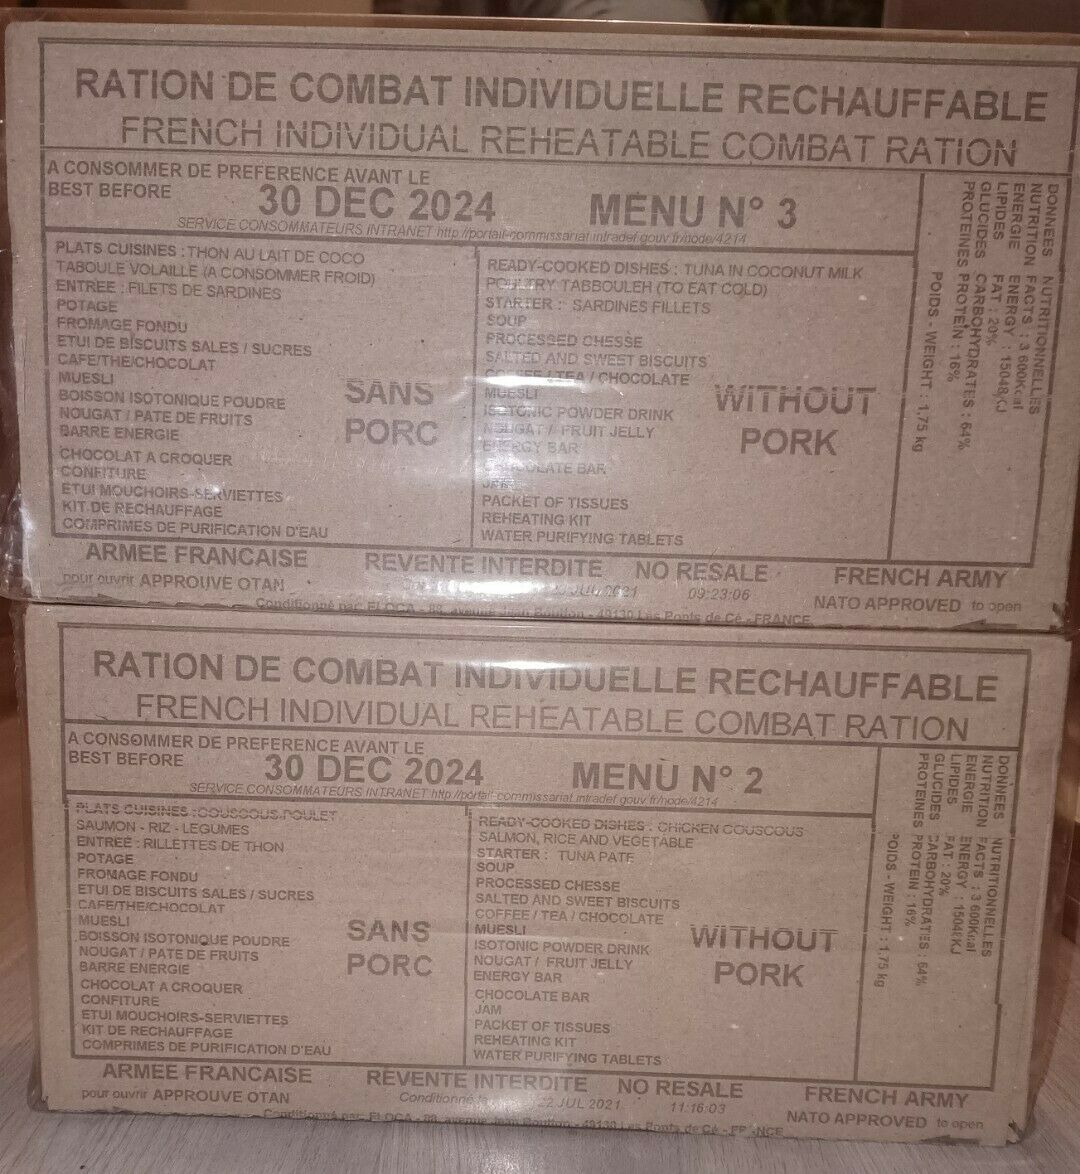 RCIR - Ration de combat Armée française 24h